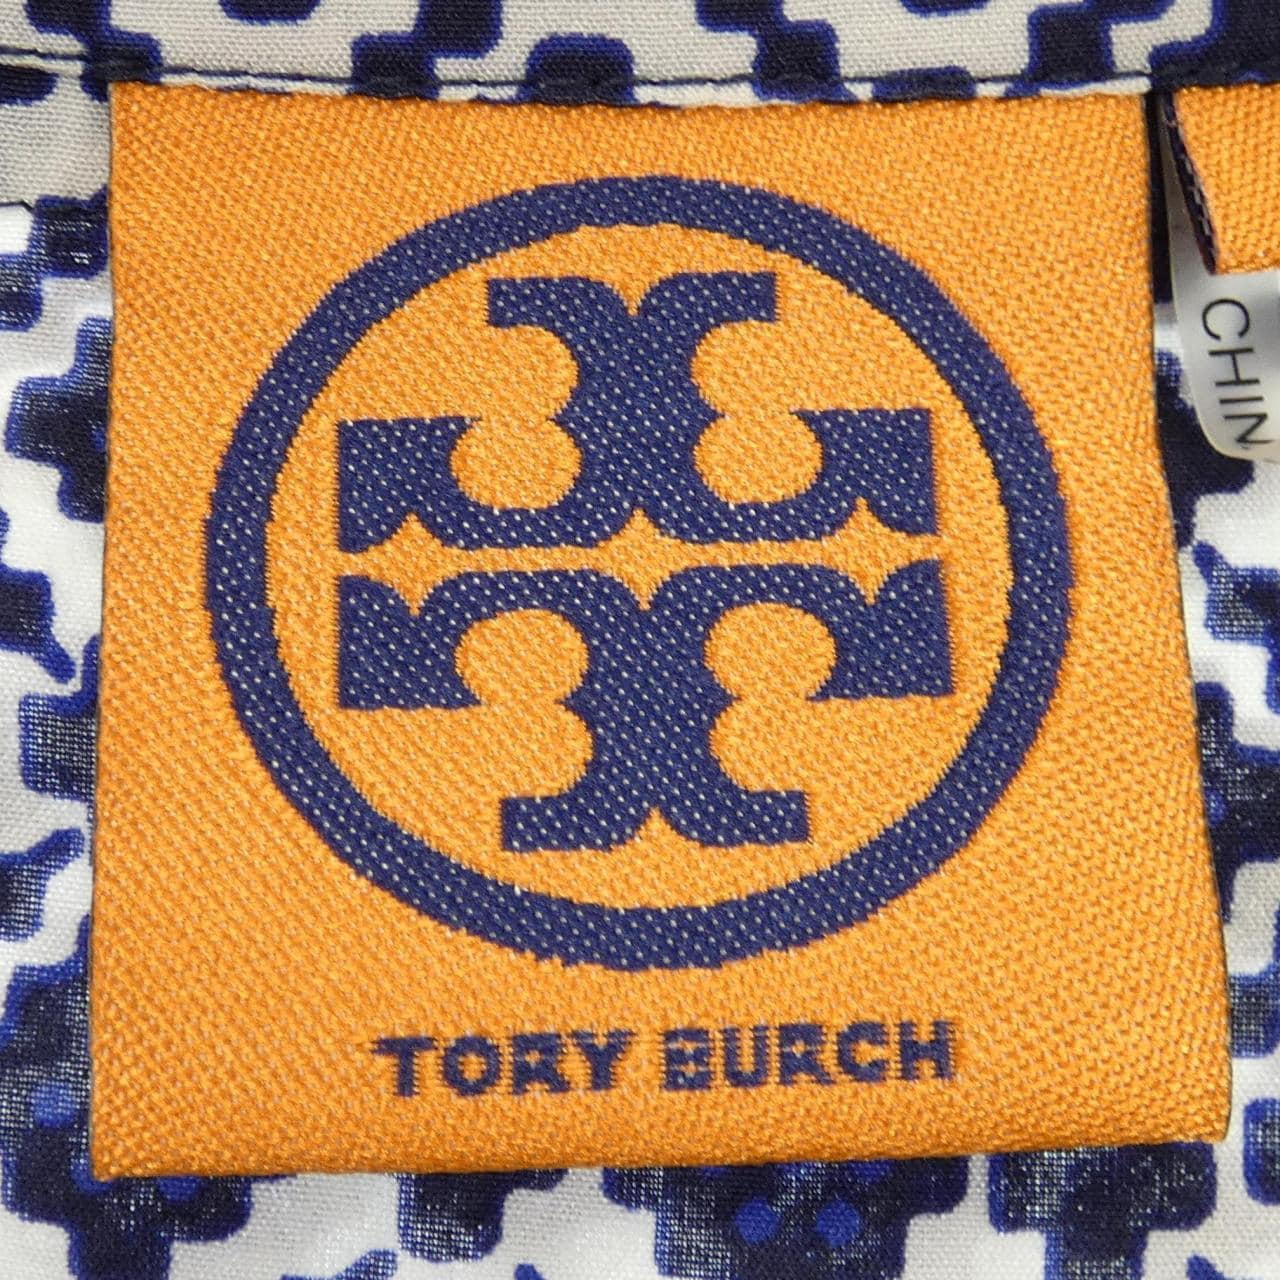 トリーバーチ TORY BURCH トップス